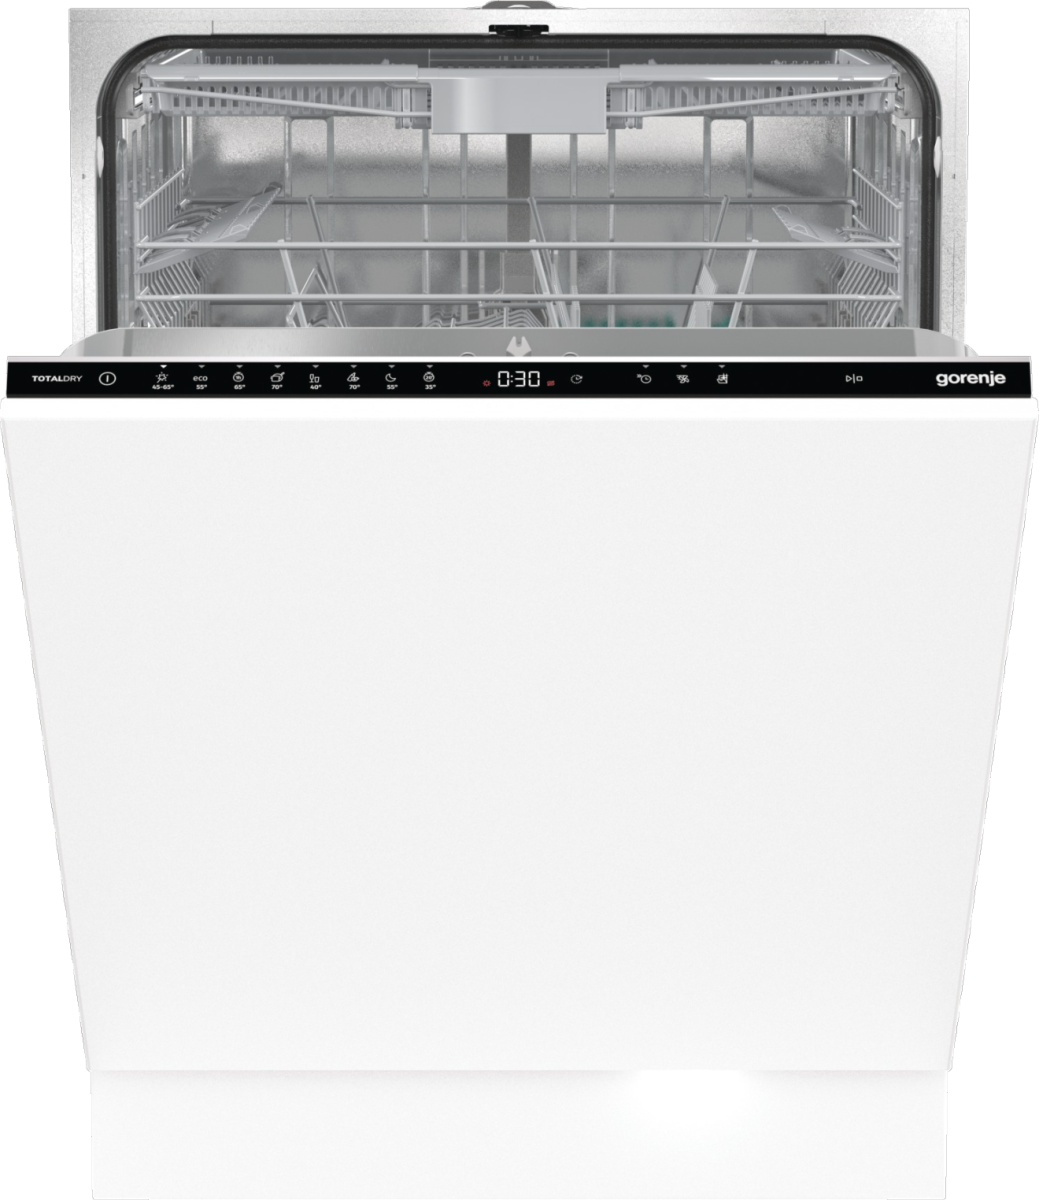 Встраиваемая посудомоечная машина Gorenje GV663D60 встраиваемая посудомоечная машина gorenje gv620e10